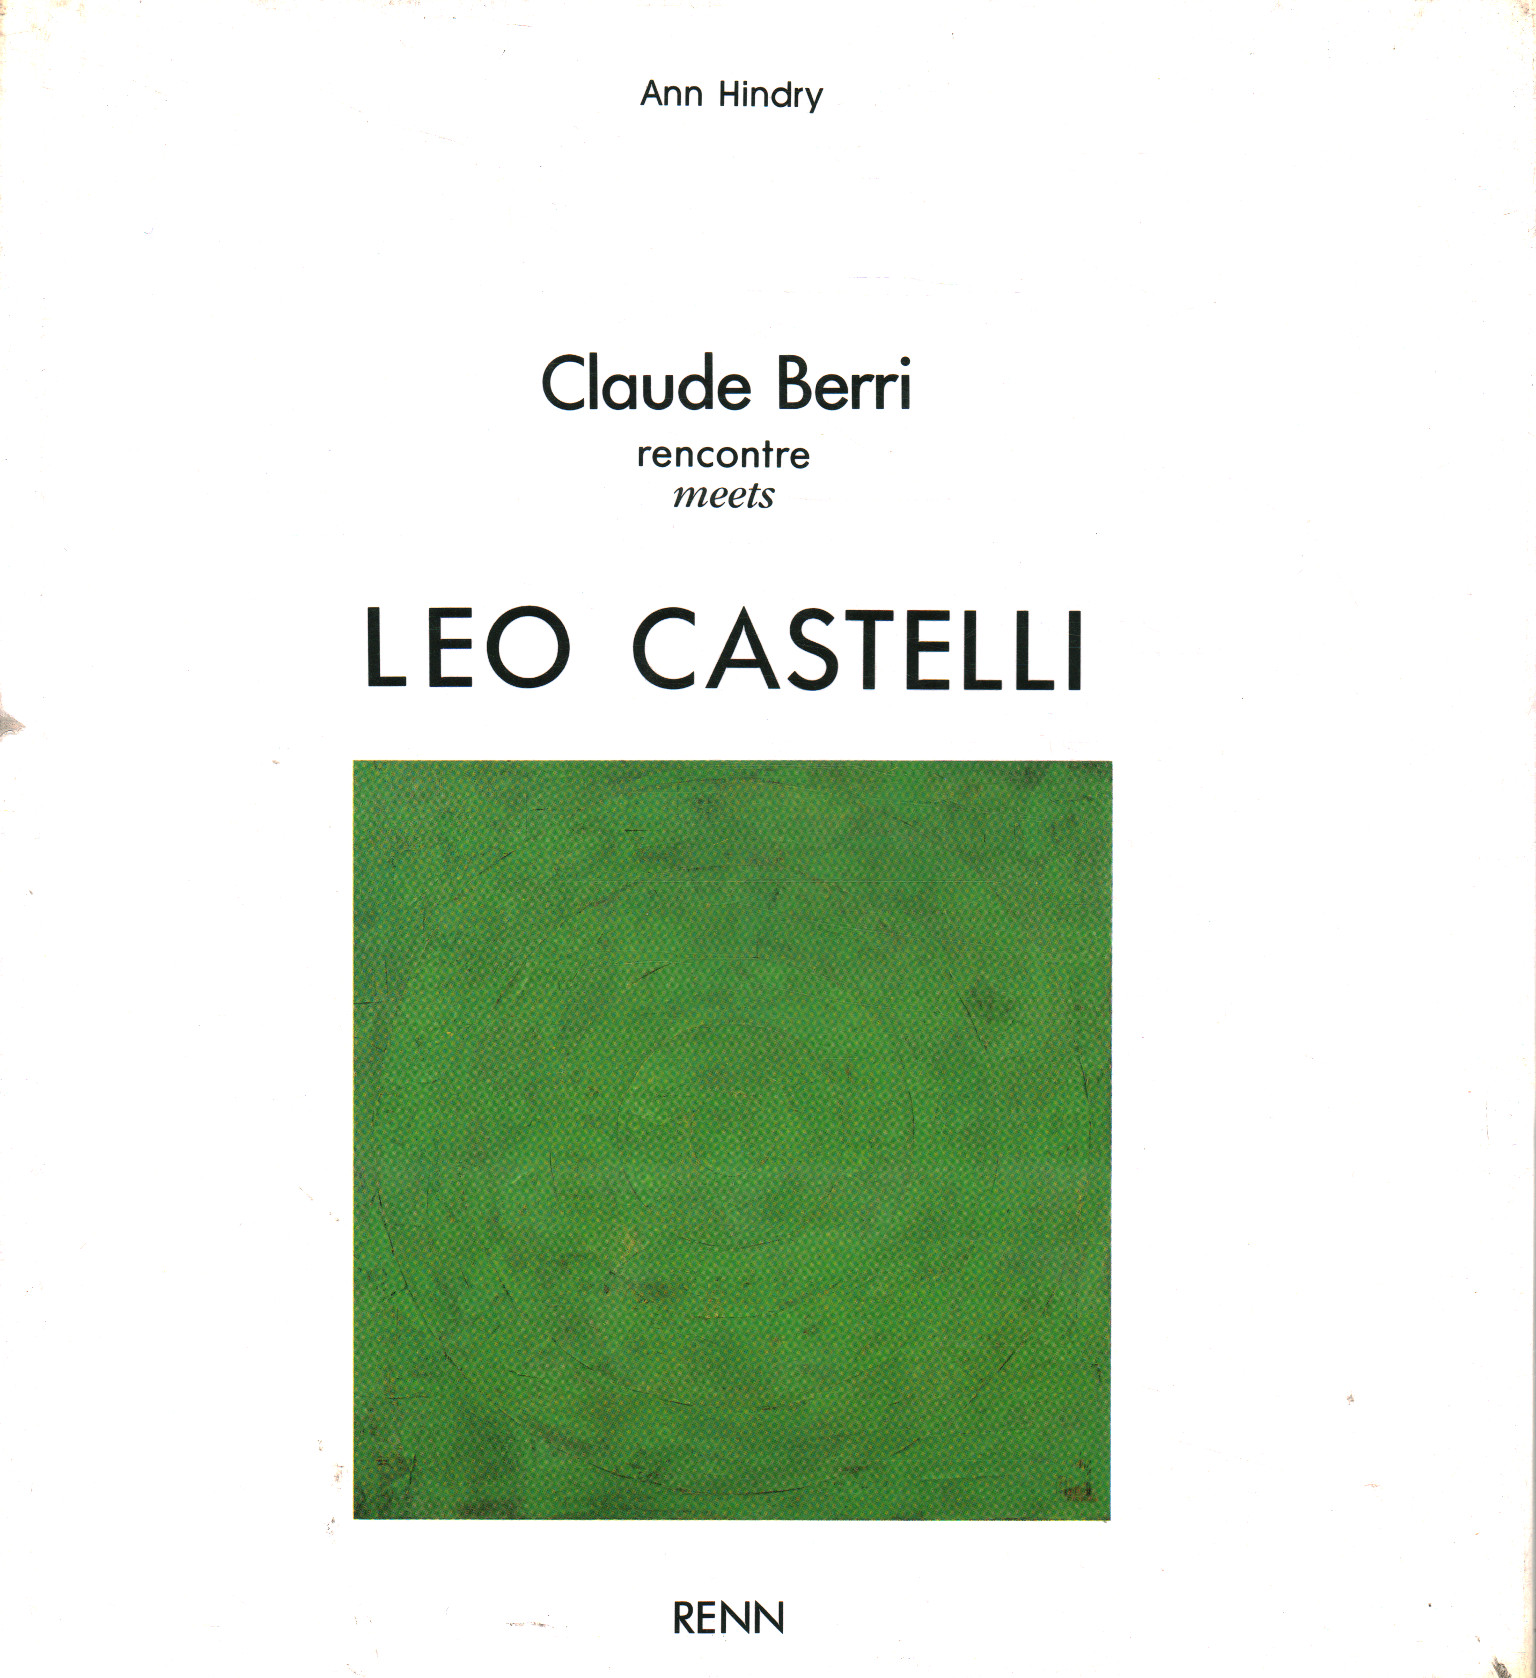 Claude Berri rencontre conoce a Leo Castell